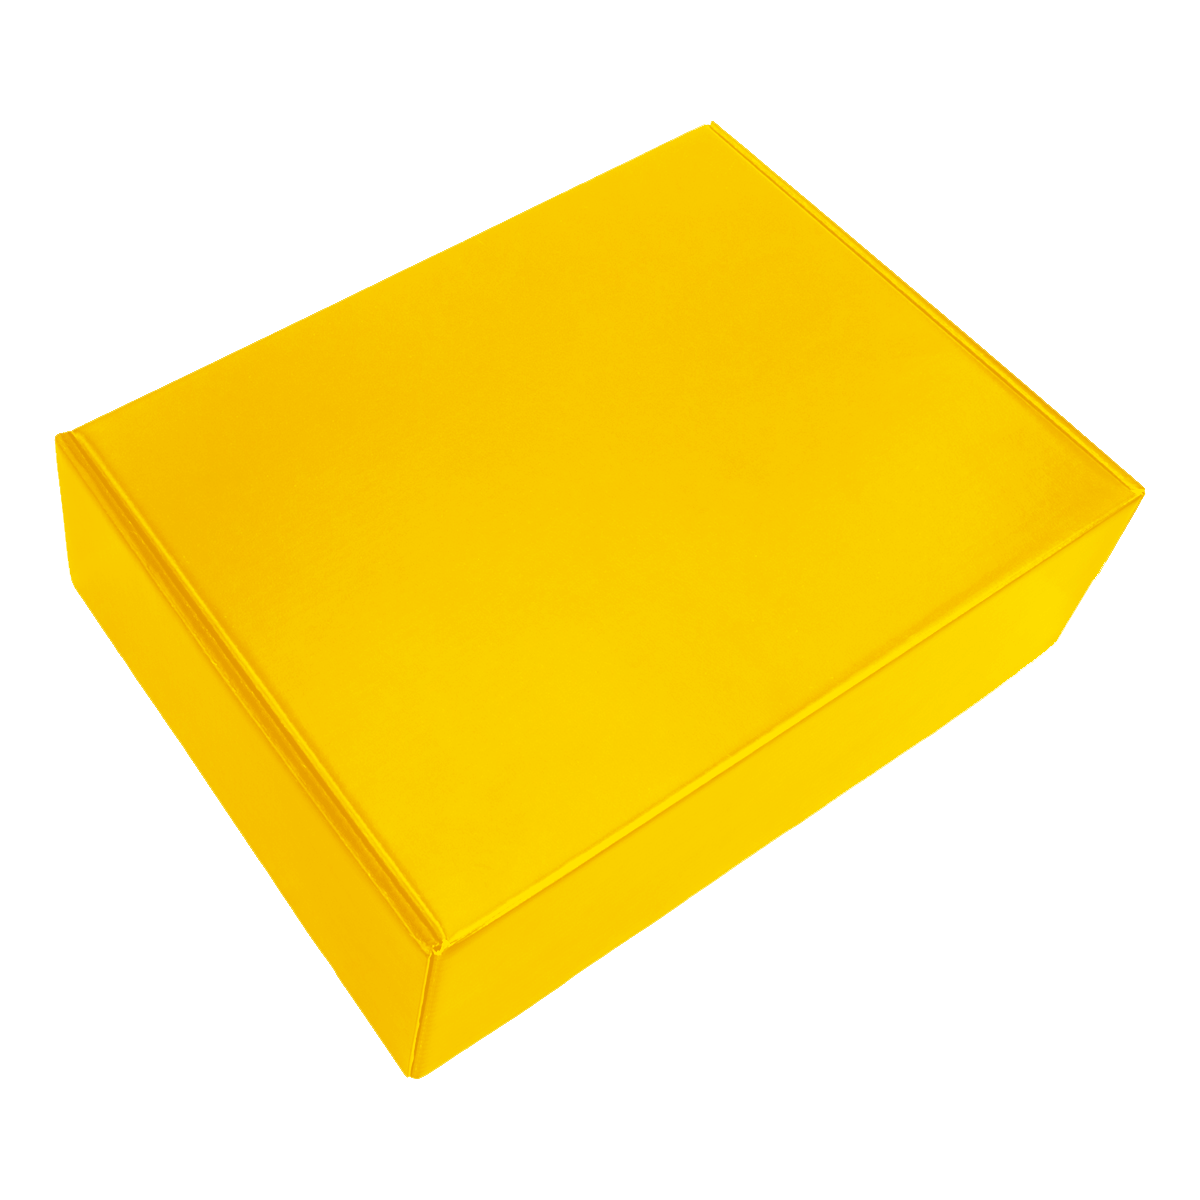 Набор New Box C W (желтый), желтый, металл, микрогофрокартон